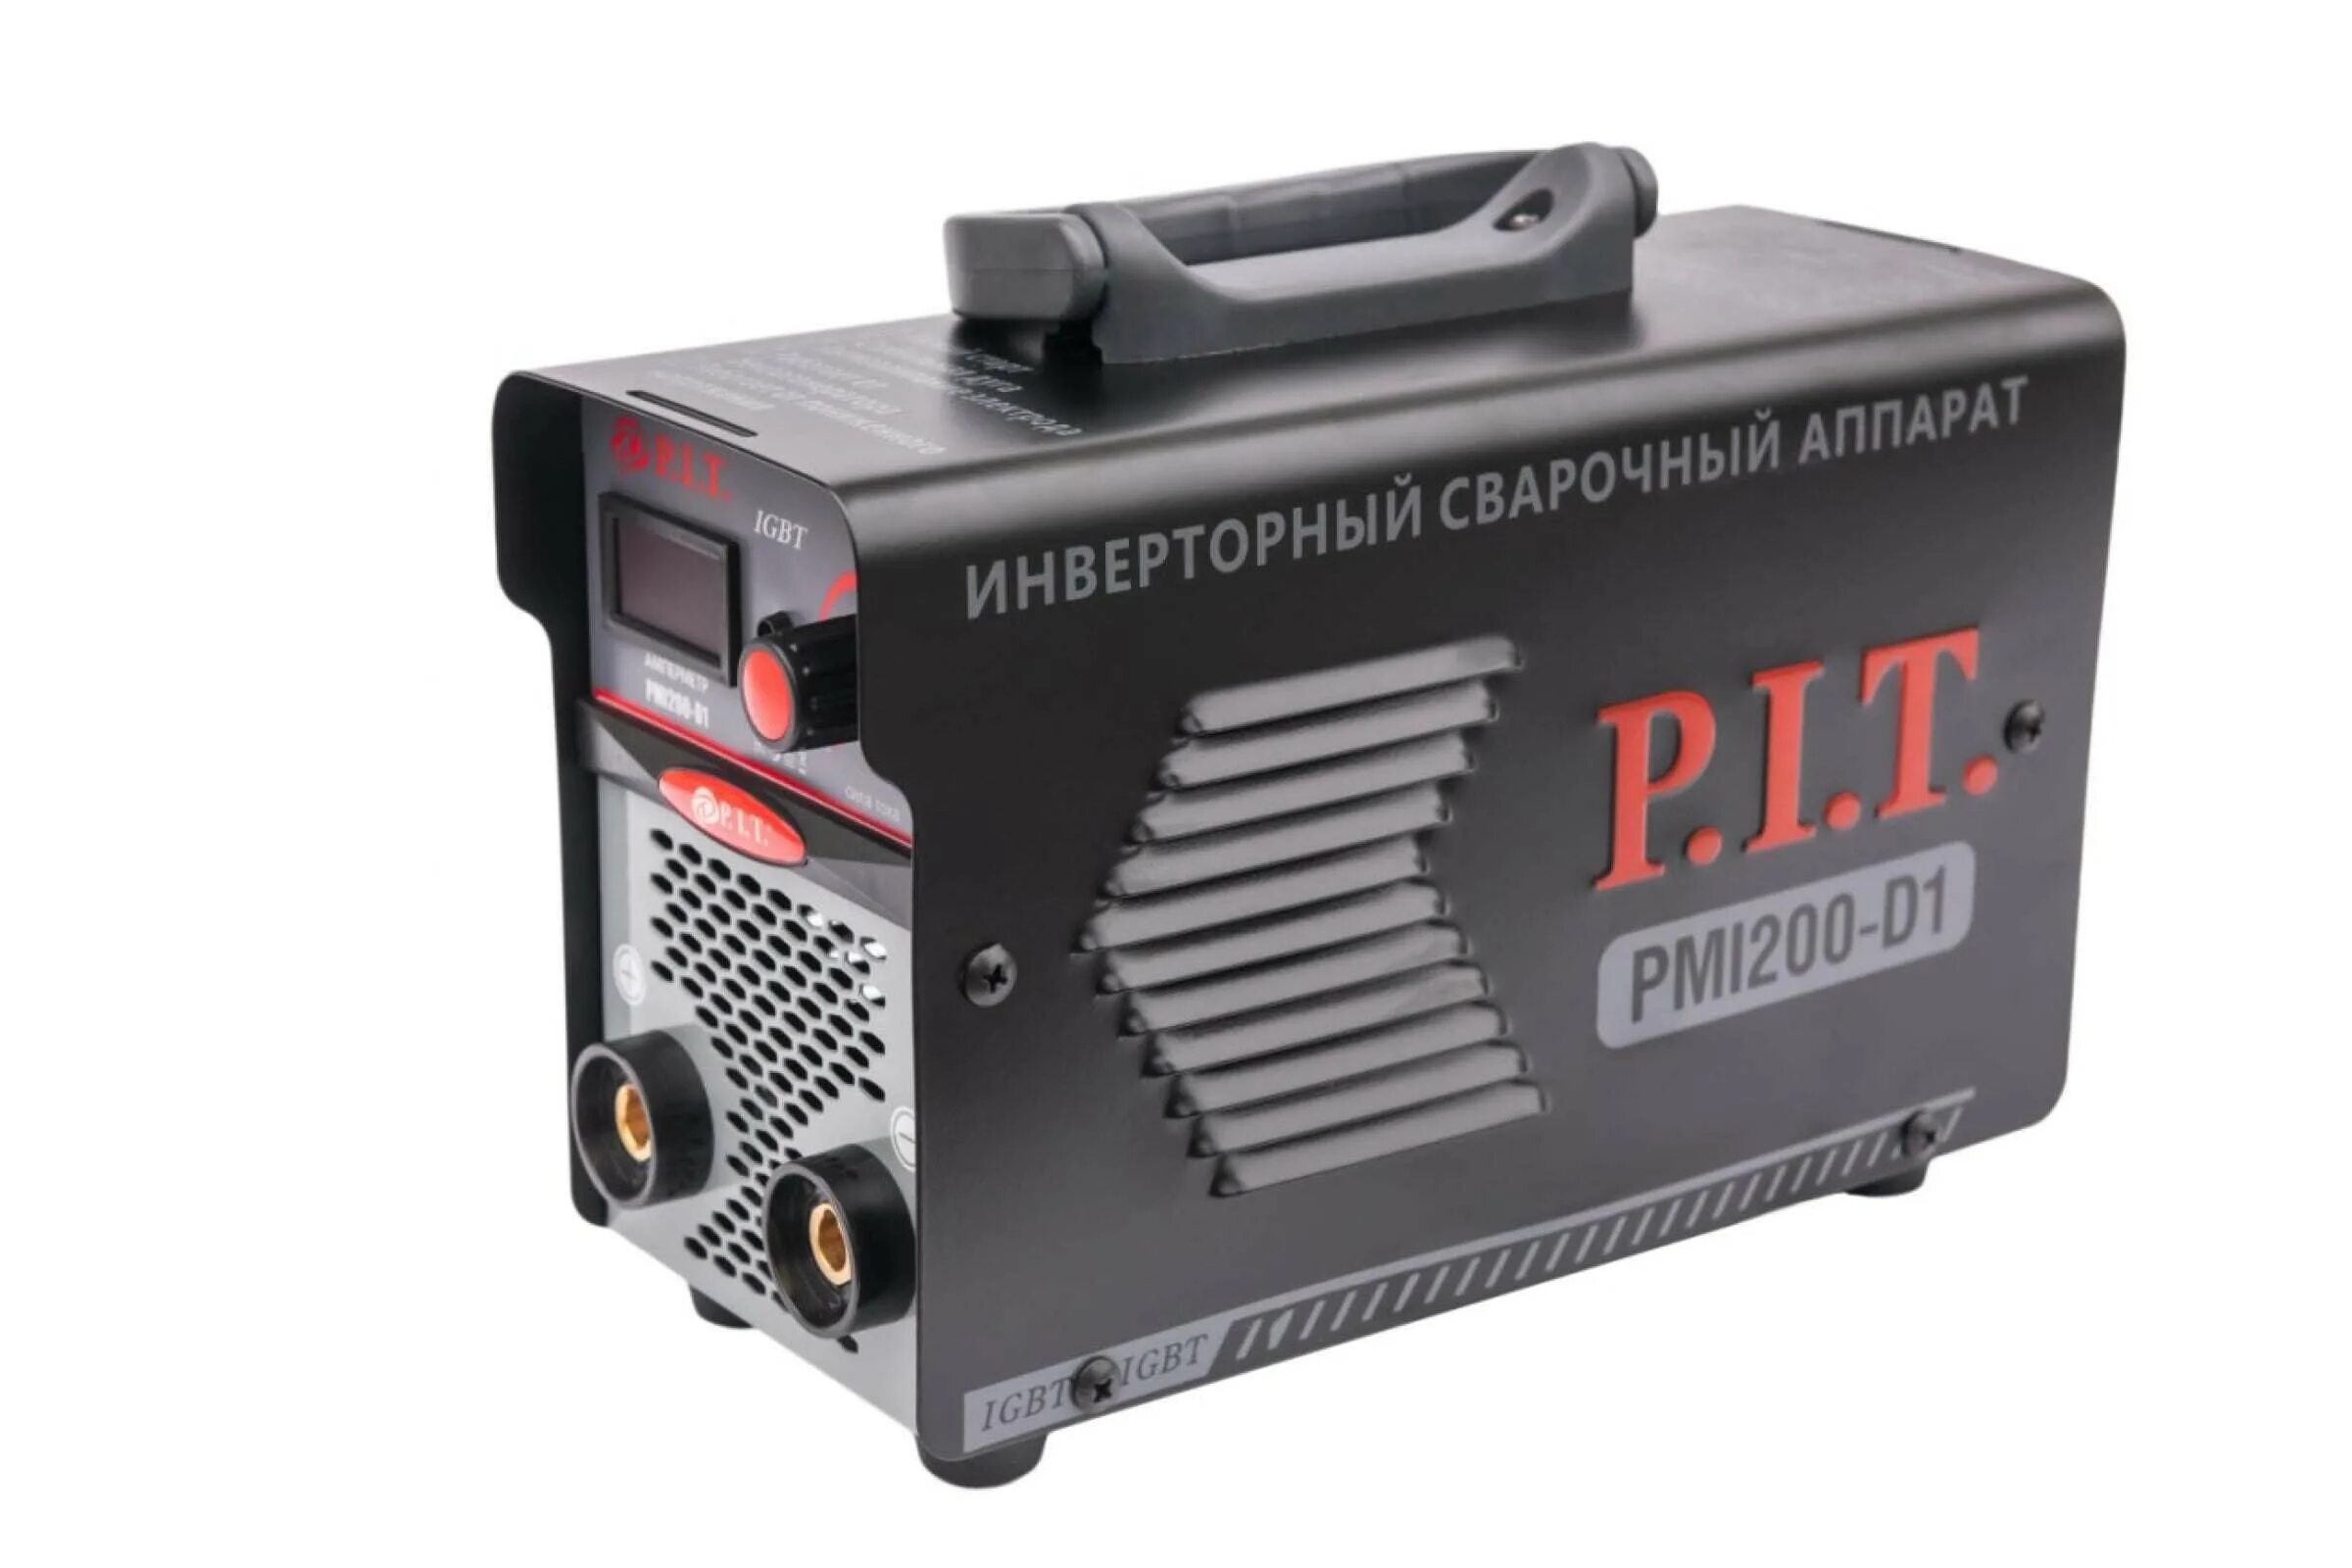 Сварочный аппарат Pit pmi200-d1. Сварочный аппарат пит 200. Инвертор сварочный Pit pmi185-d. Сварочный аппарат p.i.t. PMI 300-D.